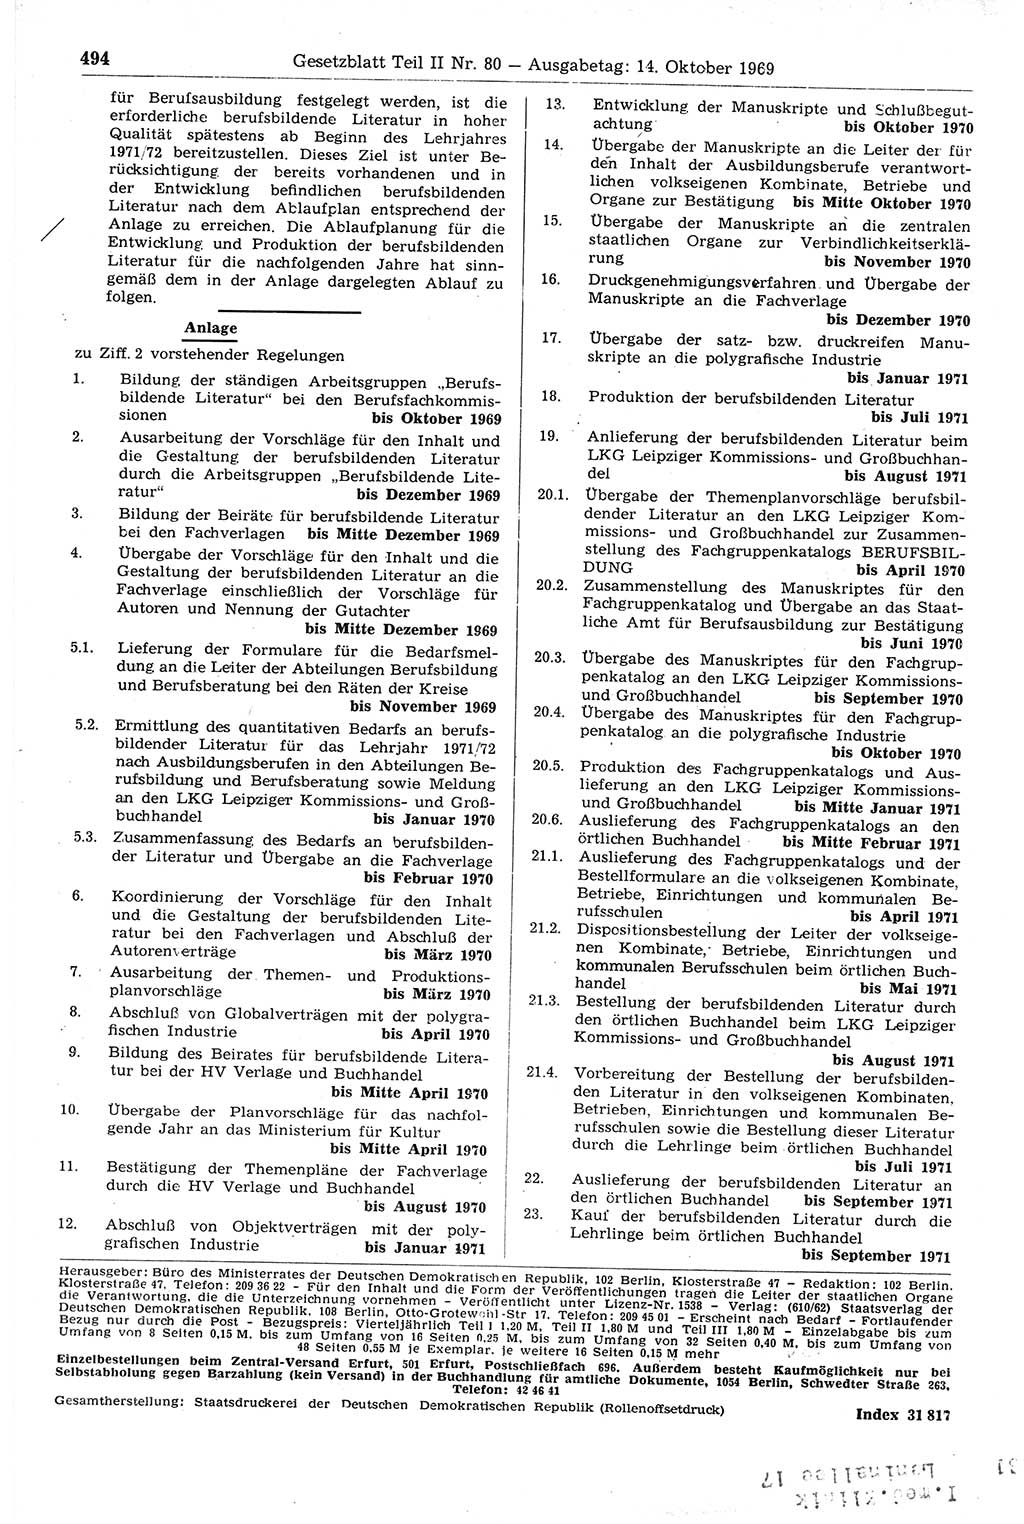 Gesetzblatt (GBl.) der Deutschen Demokratischen Republik (DDR) Teil ⅠⅠ 1969, Seite 494 (GBl. DDR ⅠⅠ 1969, S. 494)